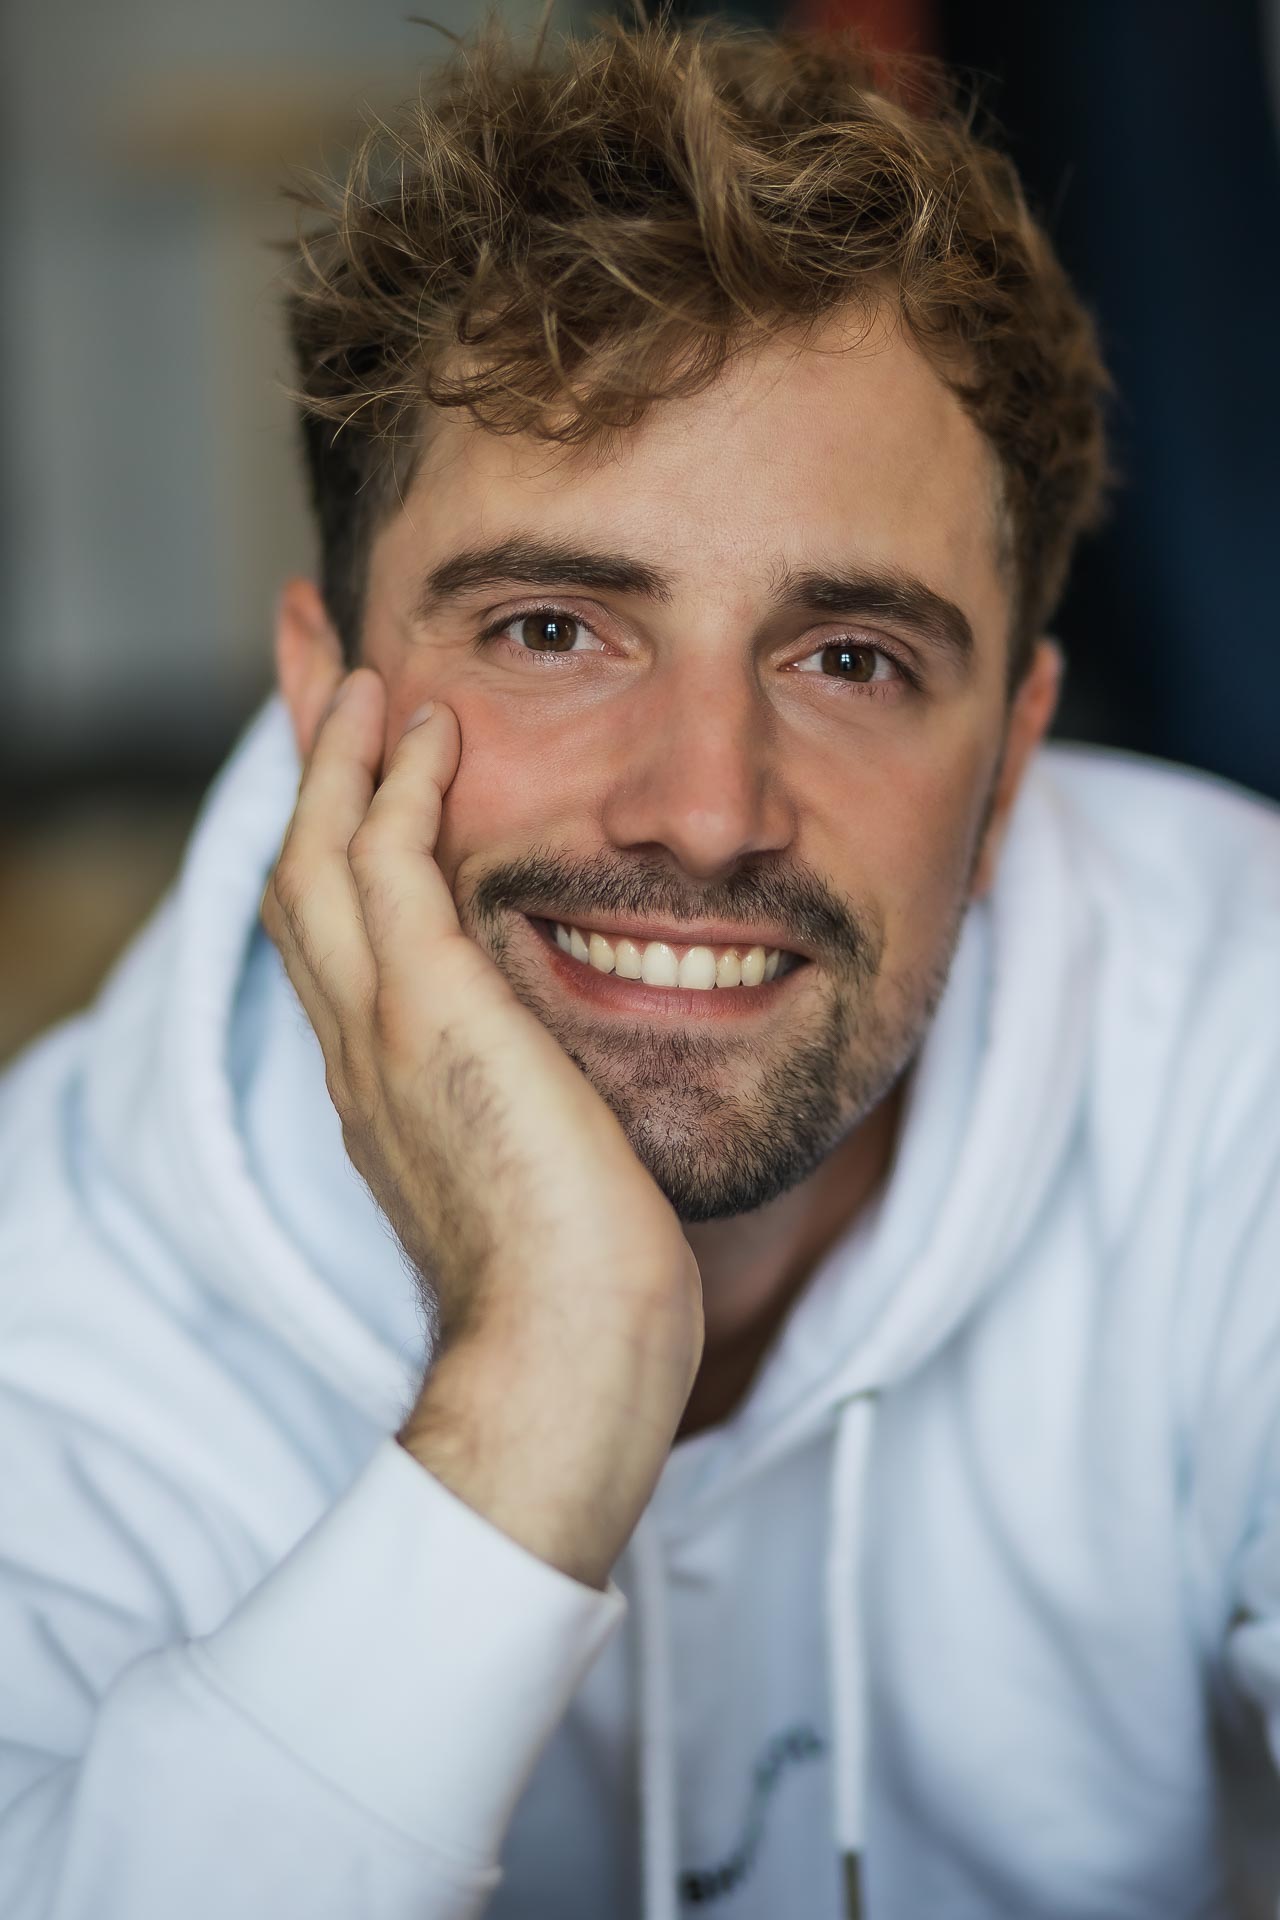 Online-Dating-Fotos: Profilfoto eines jungen, blonden Mannes mit blauen Augen, der sypathisch in die Kamera lächelt.